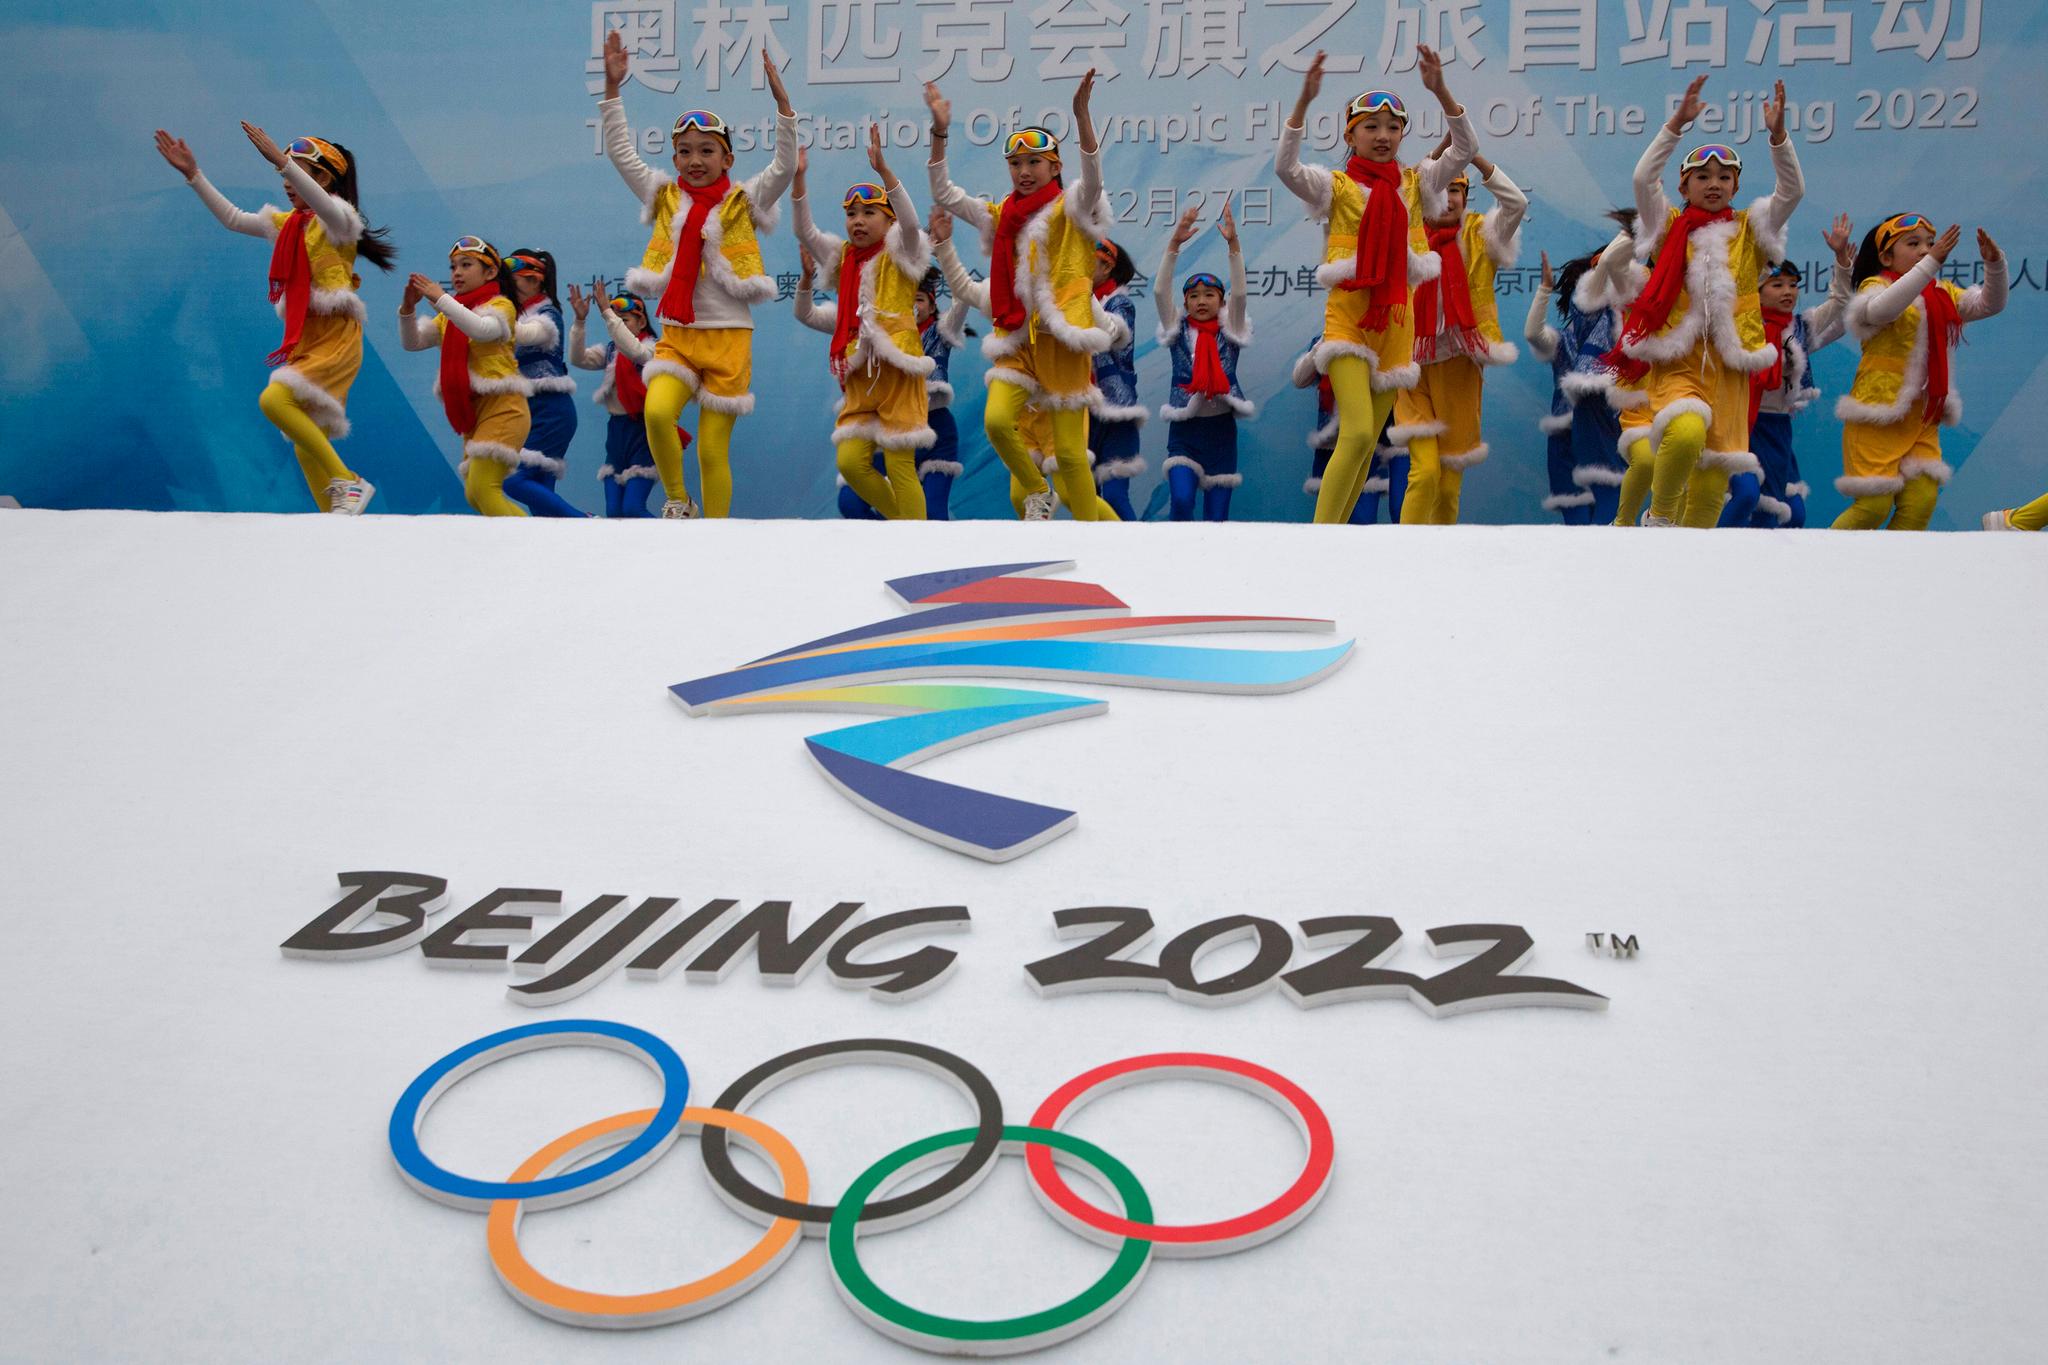 Beijing blir i 2022 den første byen som har vært vertskap for både vinter- og sommer-OL.